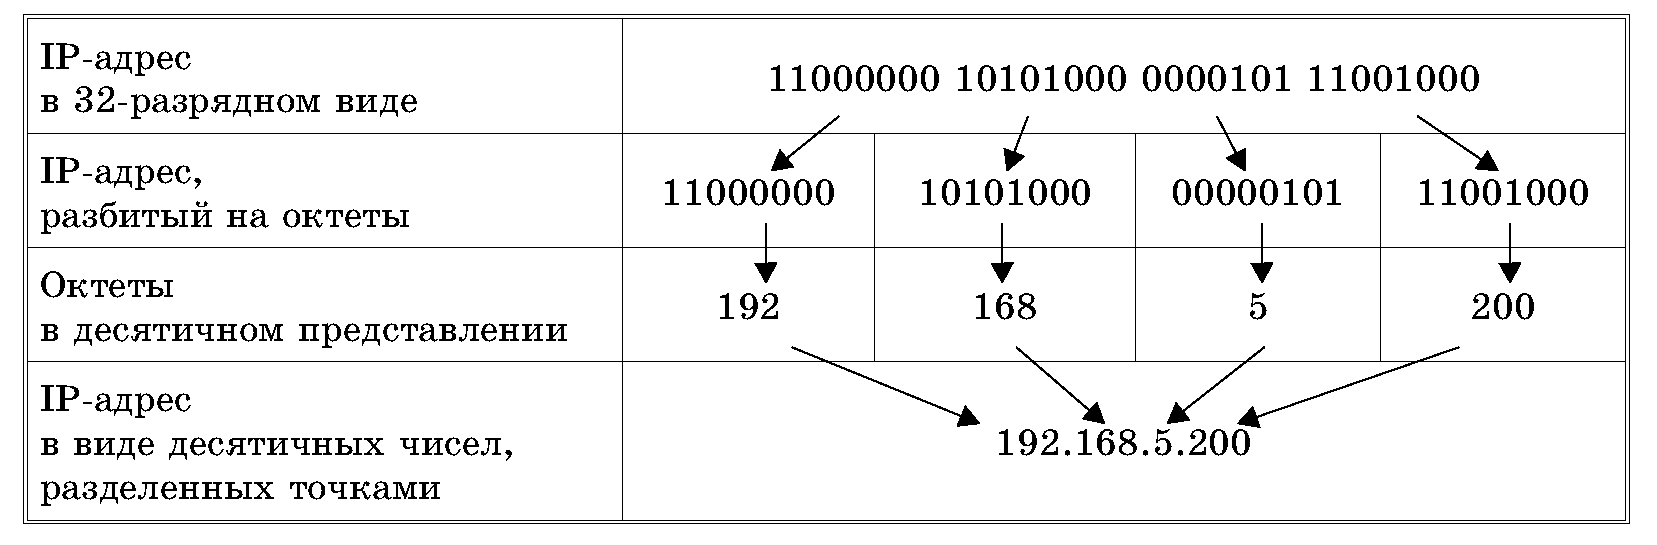 Перевод ip адреса. Структура IP адреса. Как записывается IP-адрес компьютера?. Из чего состоит IP адресации. Из чего состоит IP адрес компьютера.